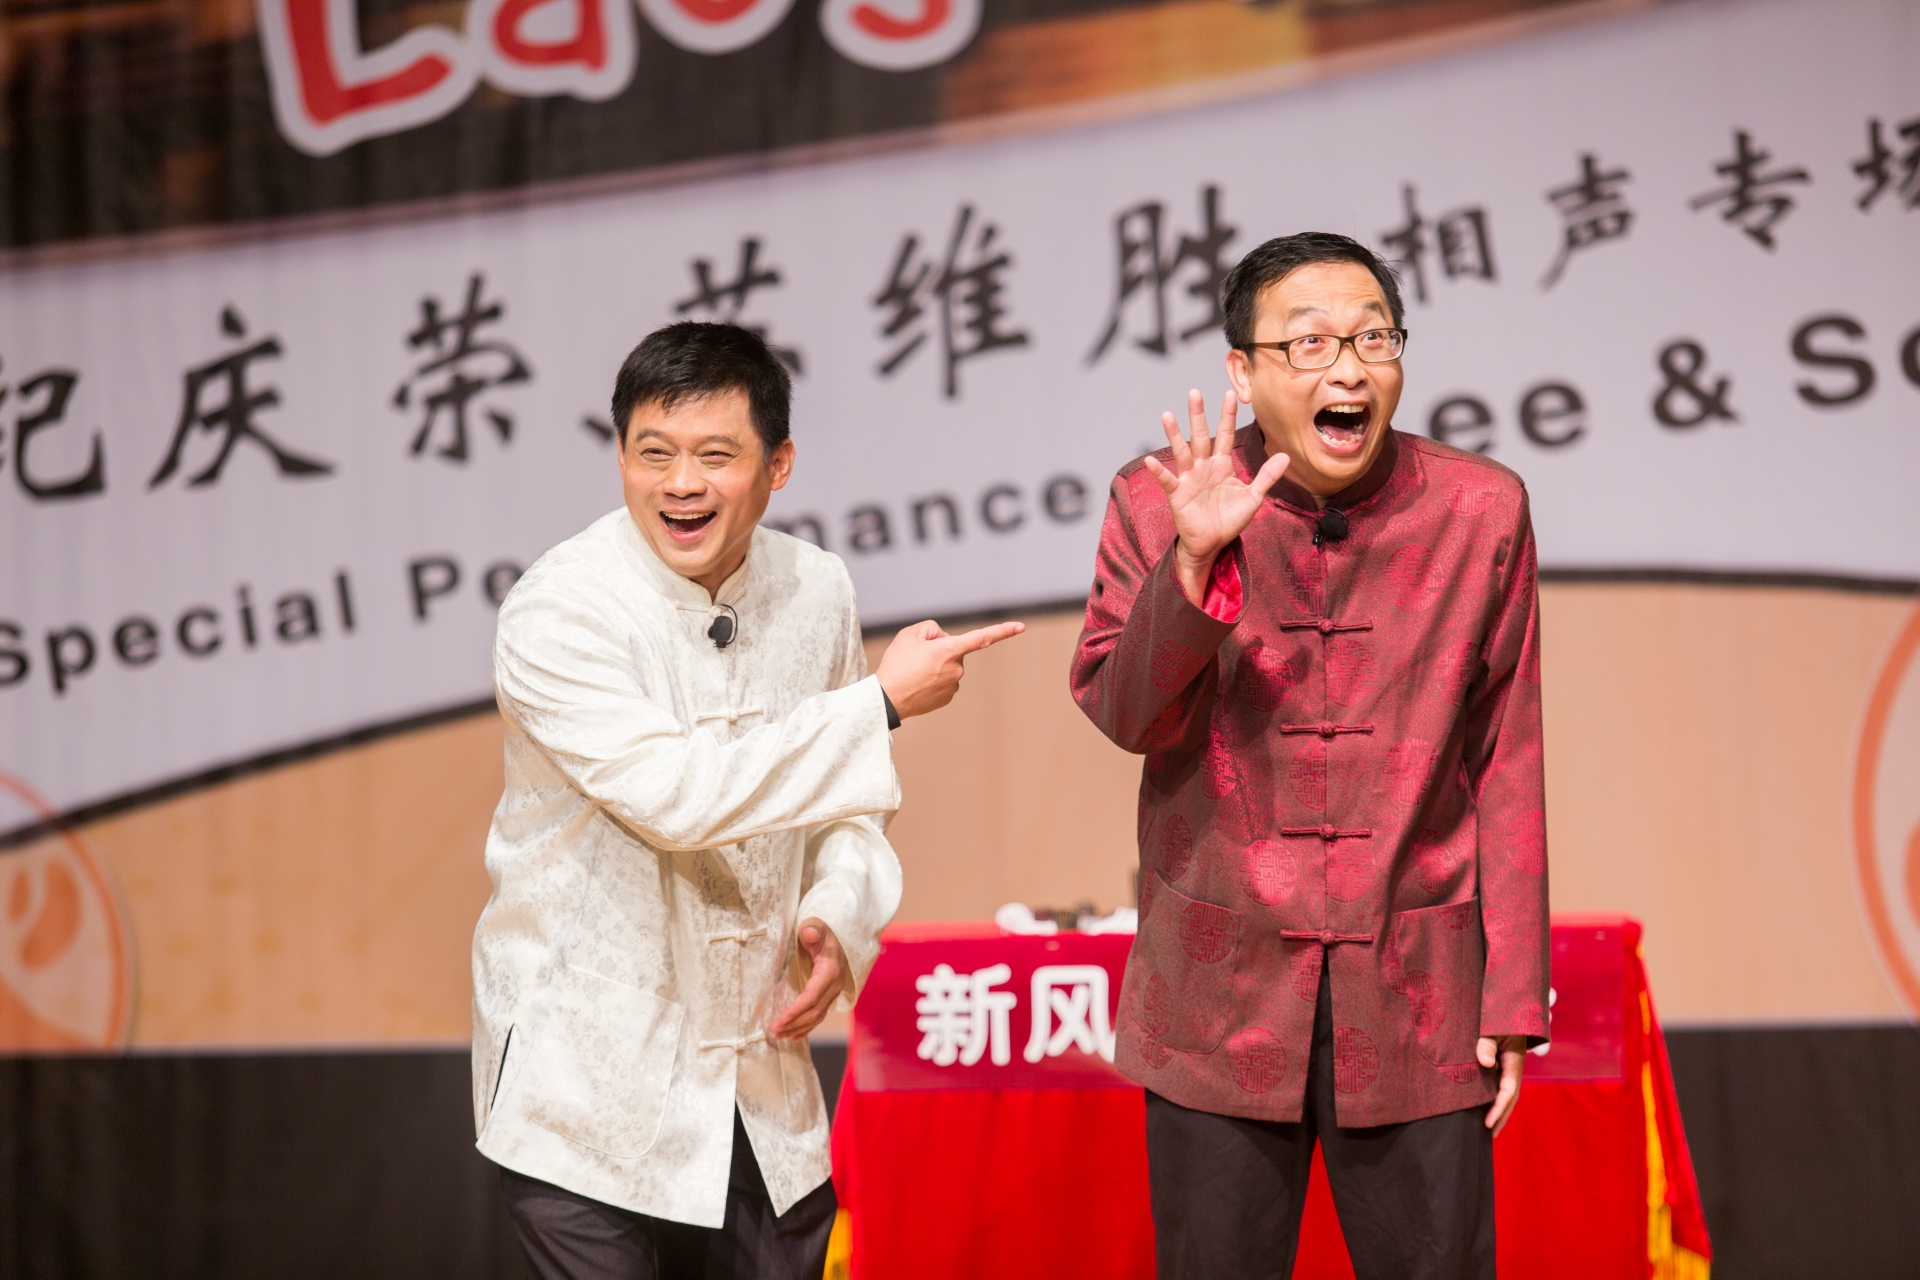 新加坡紀慶榮（左）、馬來西亞蘇維勝進行相聲演出。圖/台北曲藝團提供